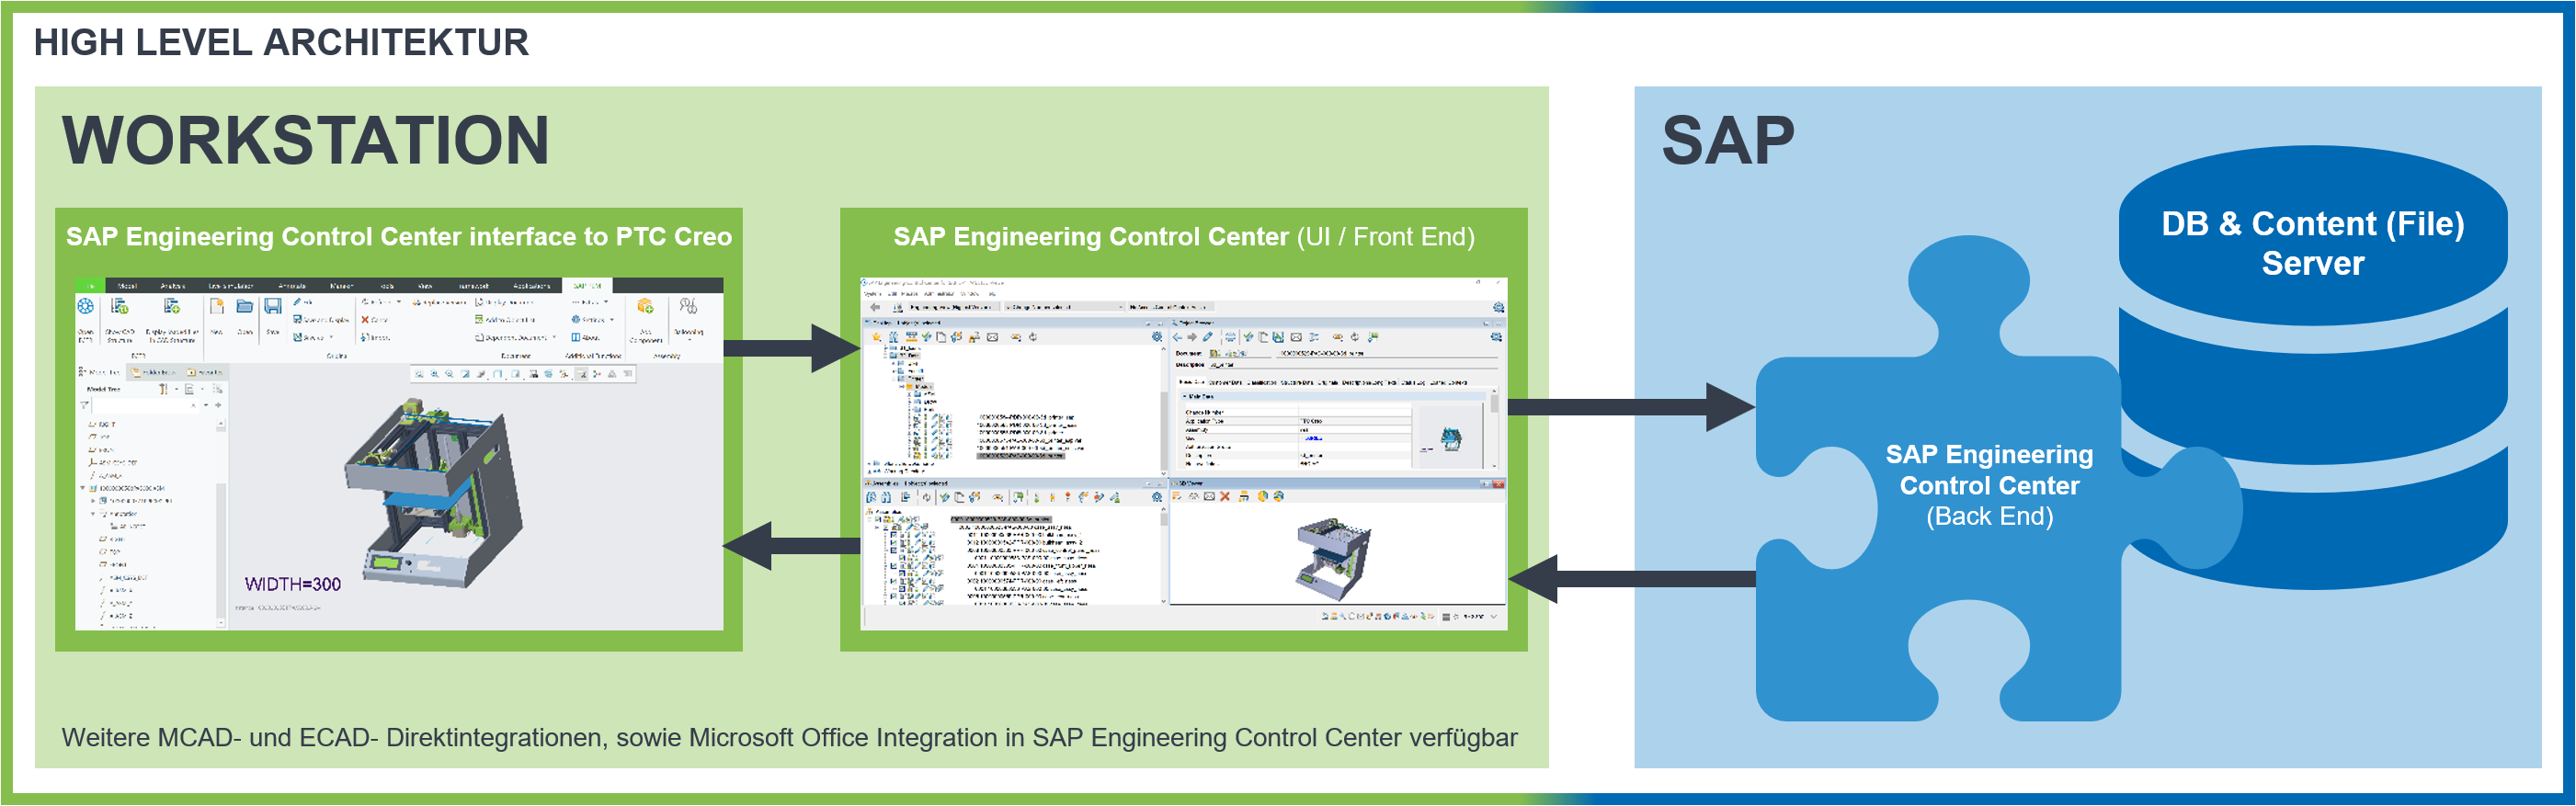 [Translate to Englisch:] Grafik zur High-Level Architektur des SAP ECTR interface to PTC Creo